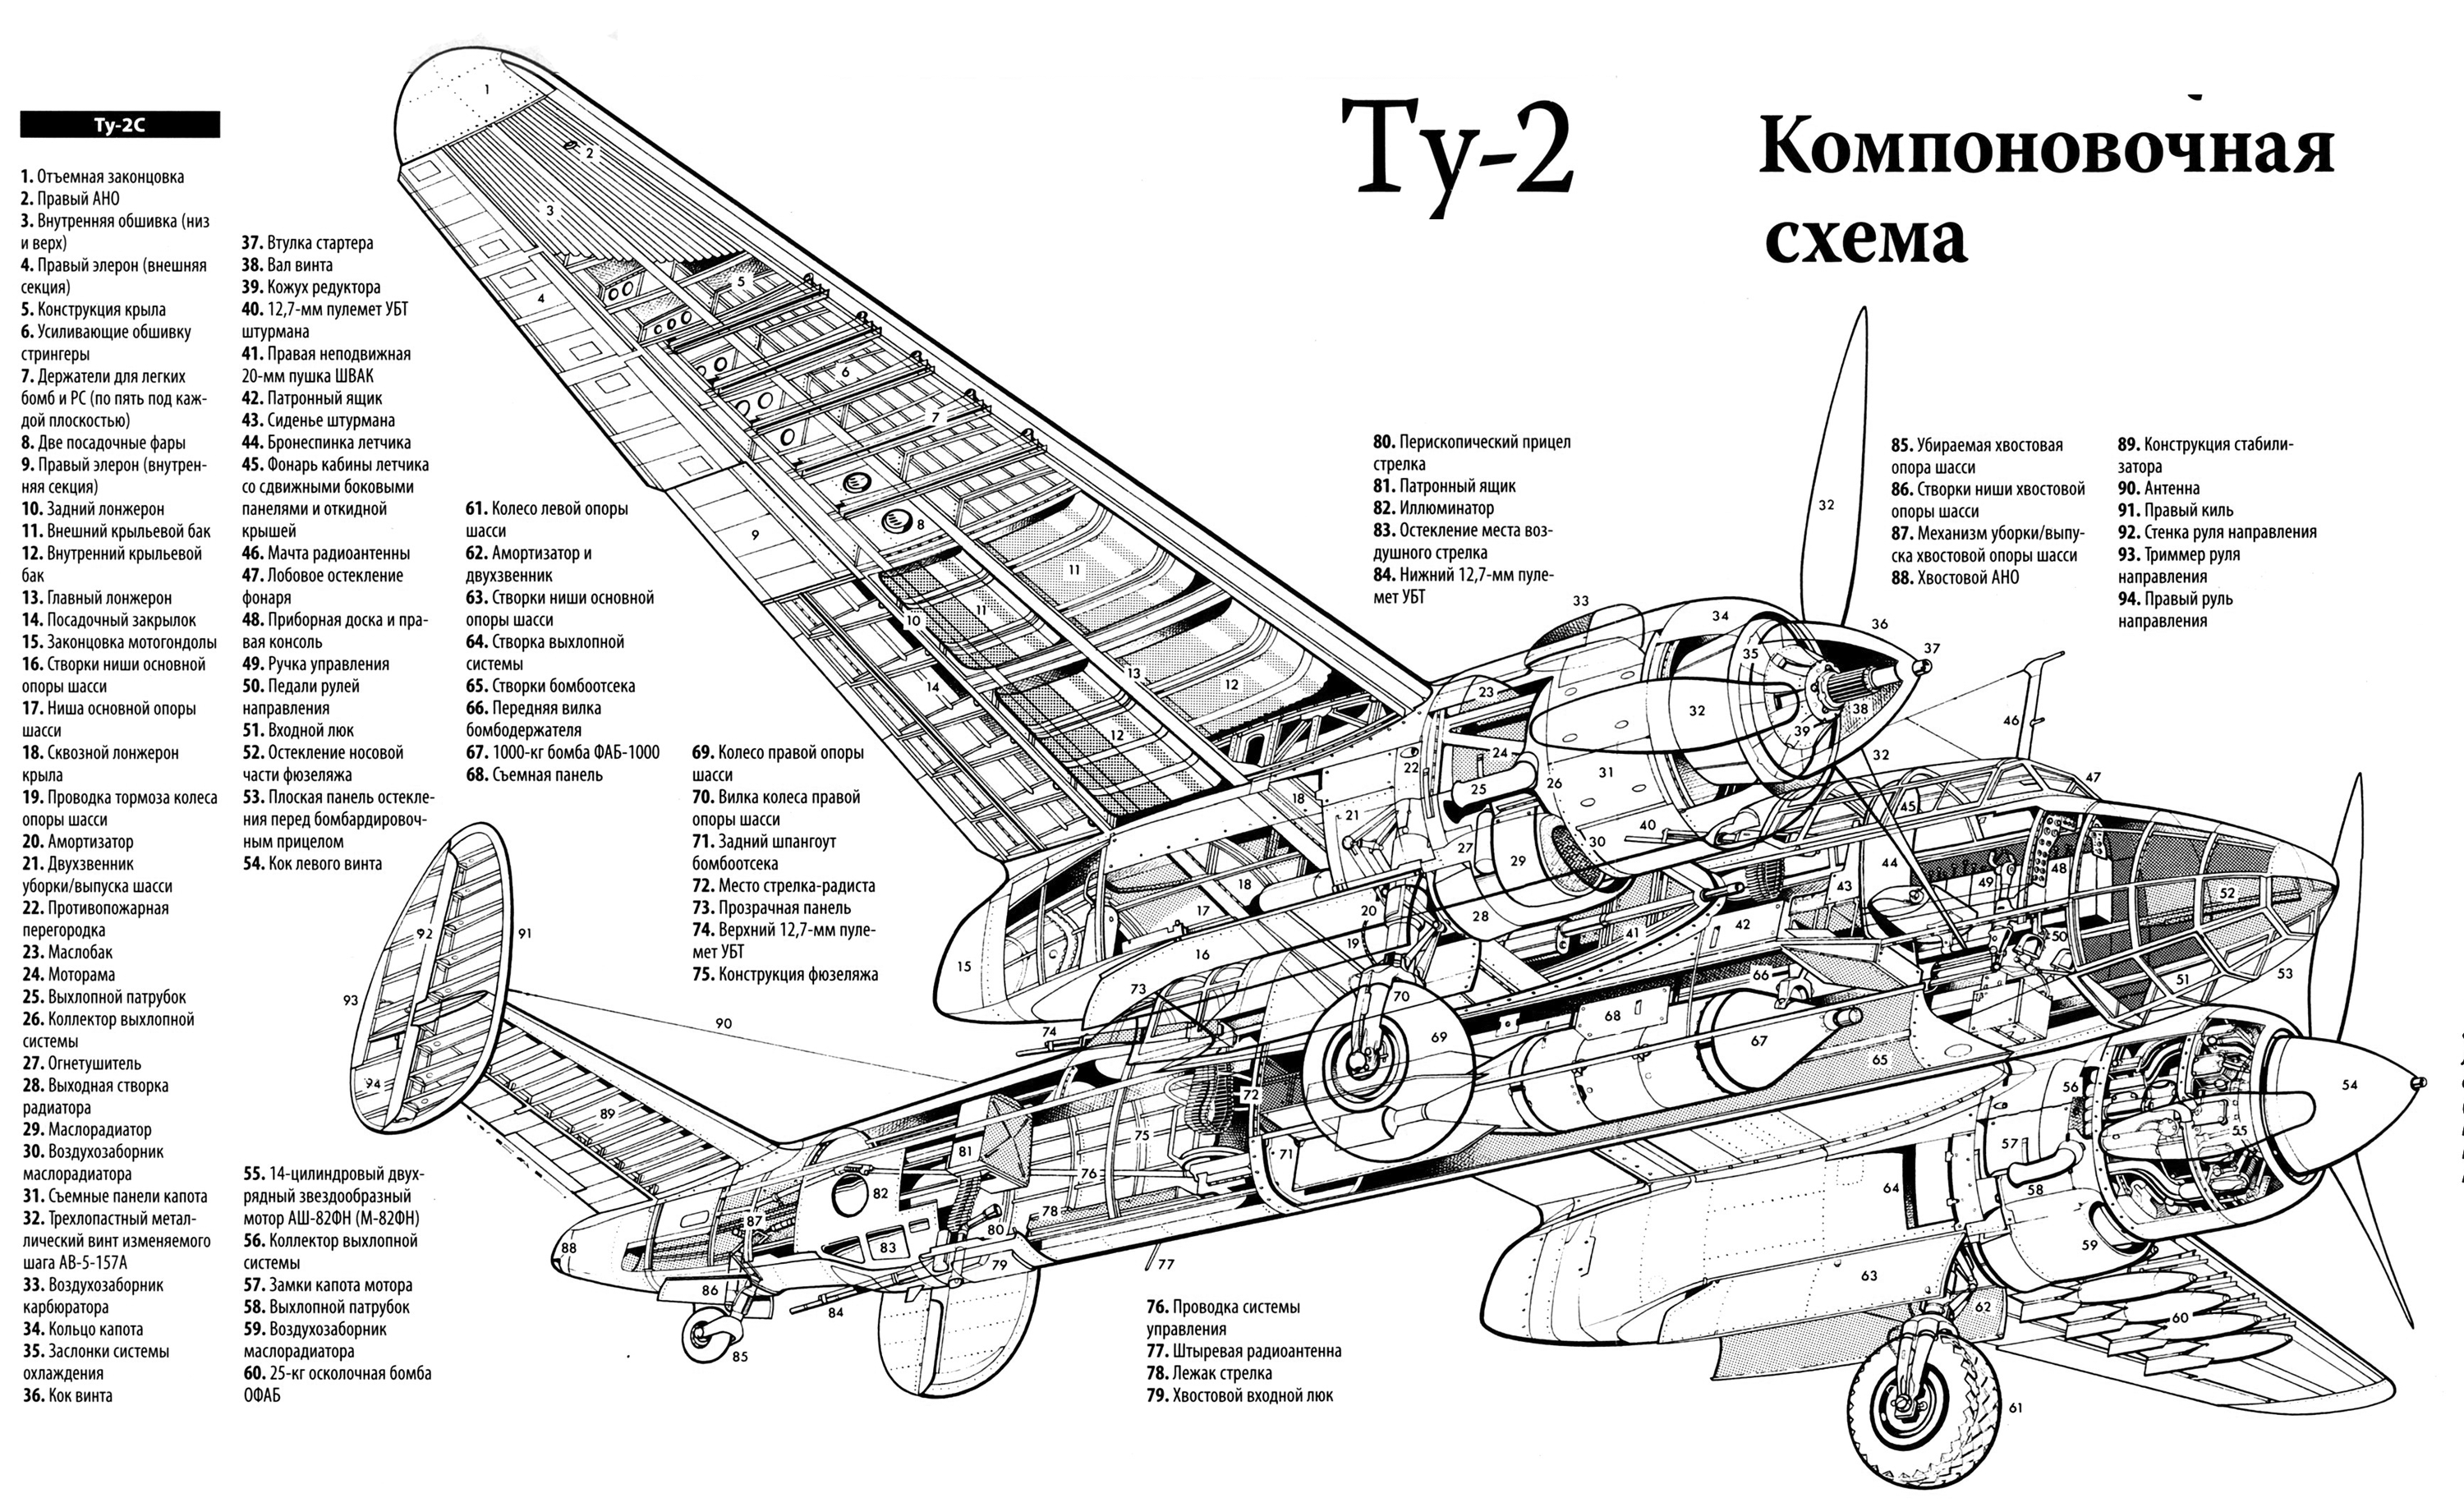 Пе-2: пикирующий самолет бомбардировщик, вооружение, конструкция, технические характеристики (ттх)